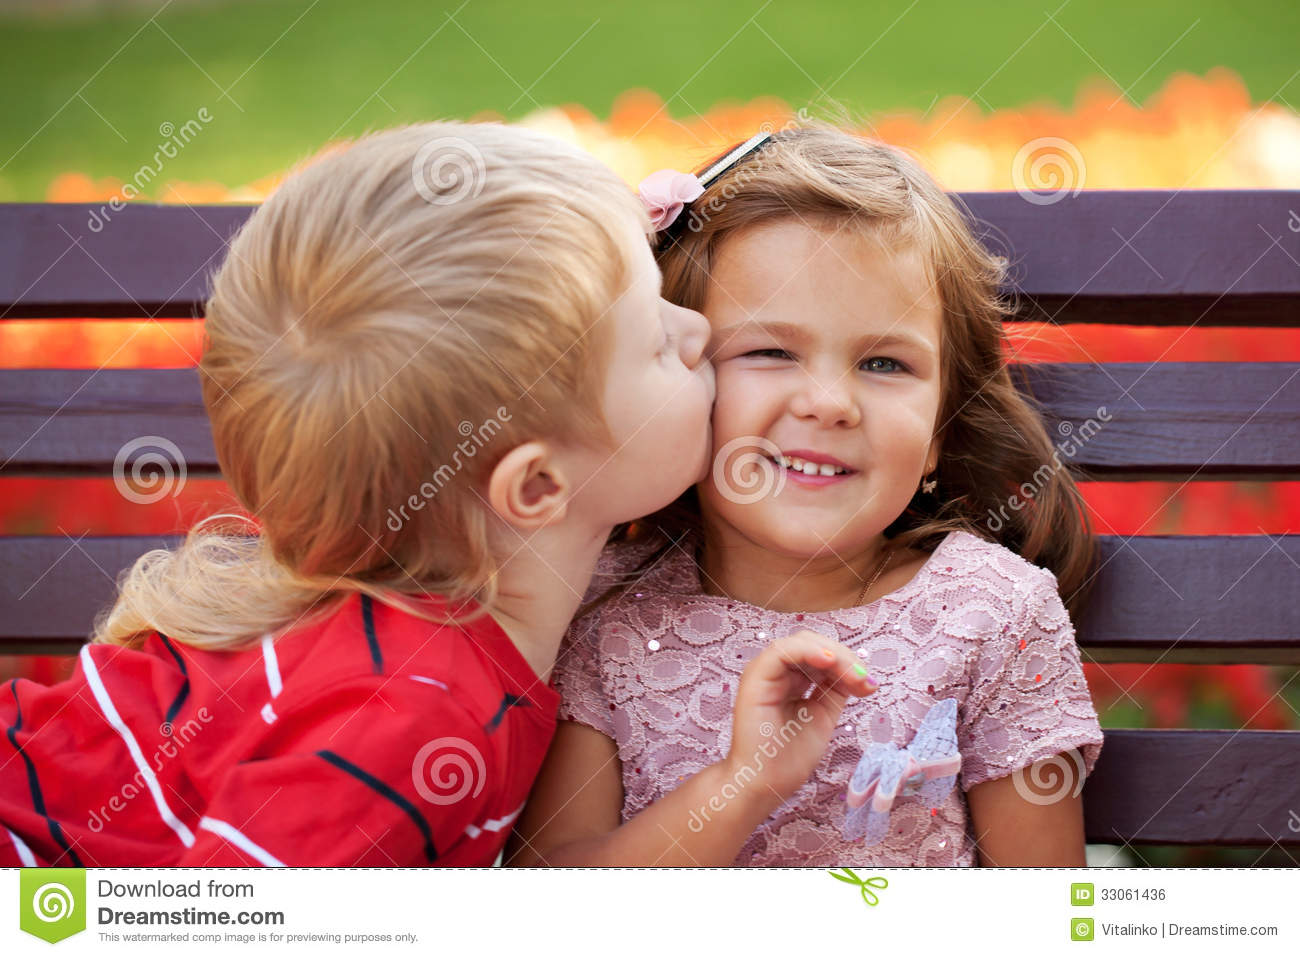 le-kids-loving-each-other-hugging-kissing-33061436.jpg